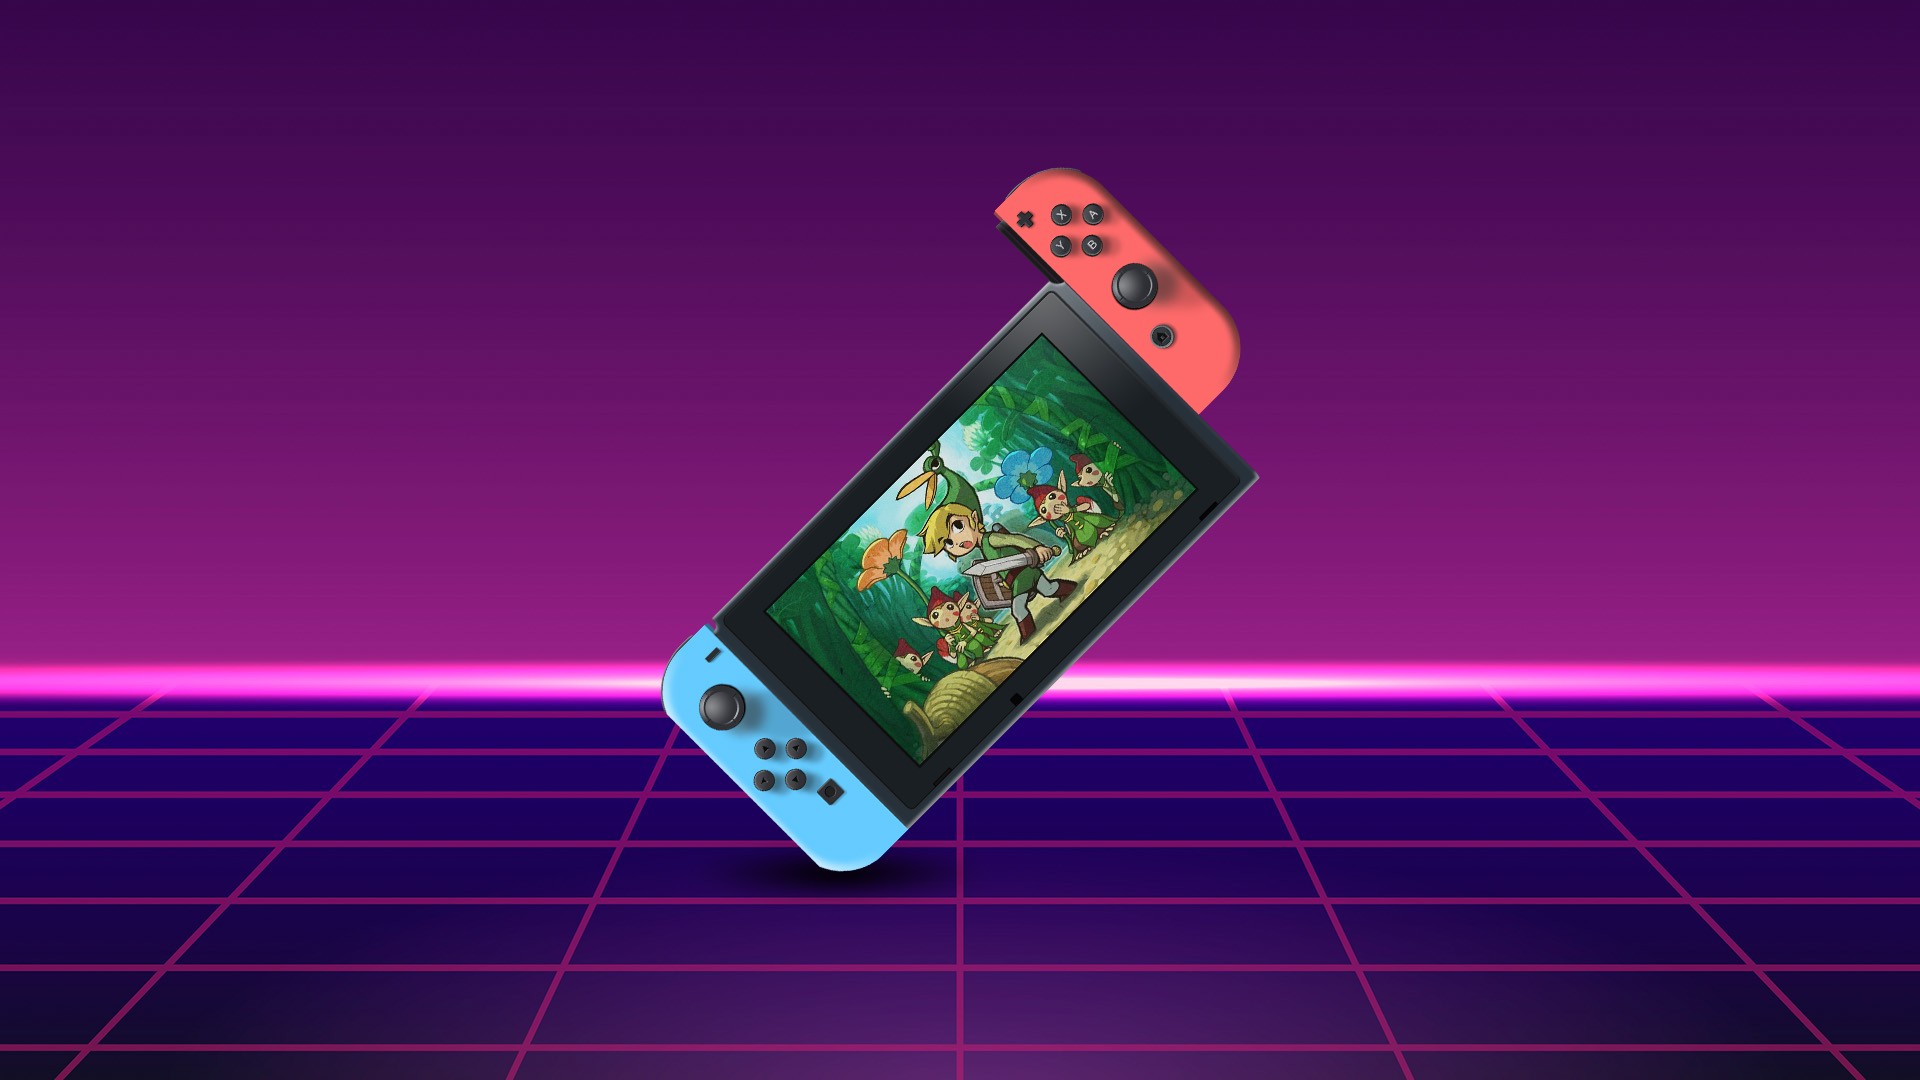 Nintendo Switch será lançado no Brasil dia 18 de setembro - Portal do Nerd